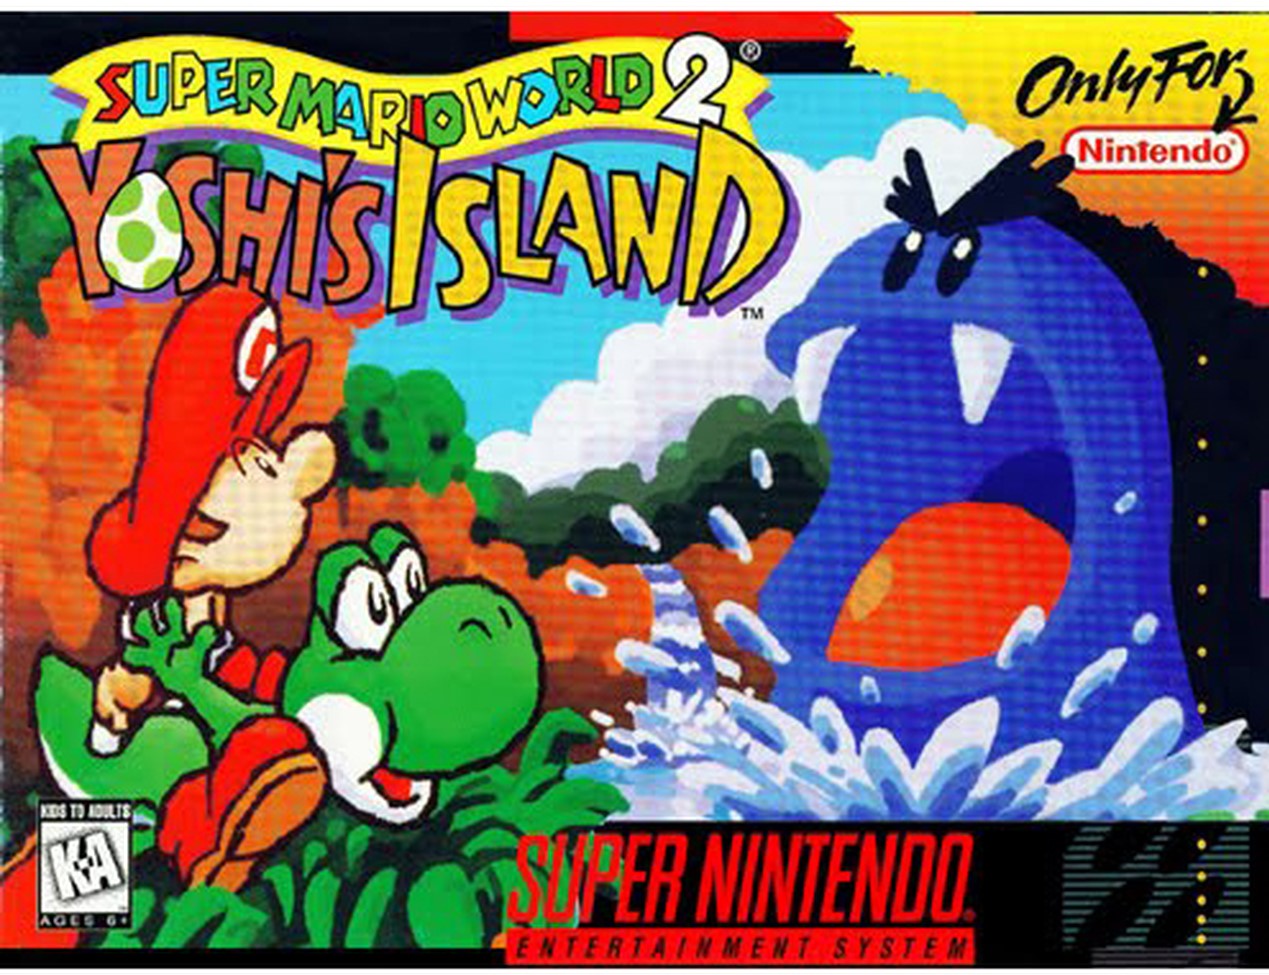 Super Mario World 2 Yoshis Island (Csak a kazetta) - Super Nintendo Entertainment System Játékok